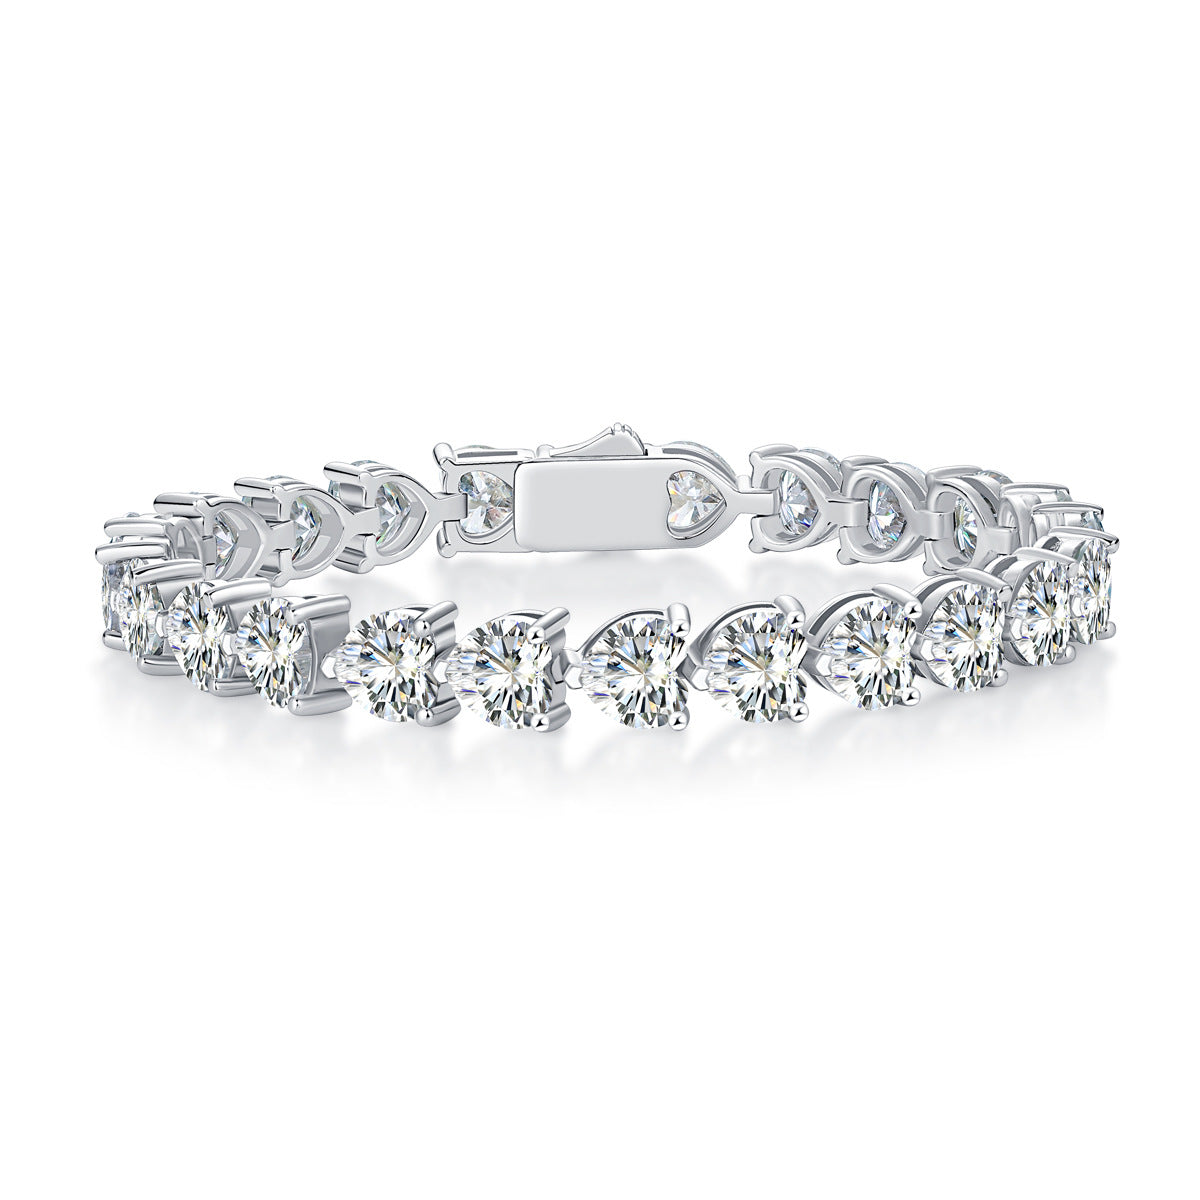 Full diamond 6.5mm heart shaped full moissanite hand ornament S925 silver plated 18k gold luxury bracelet